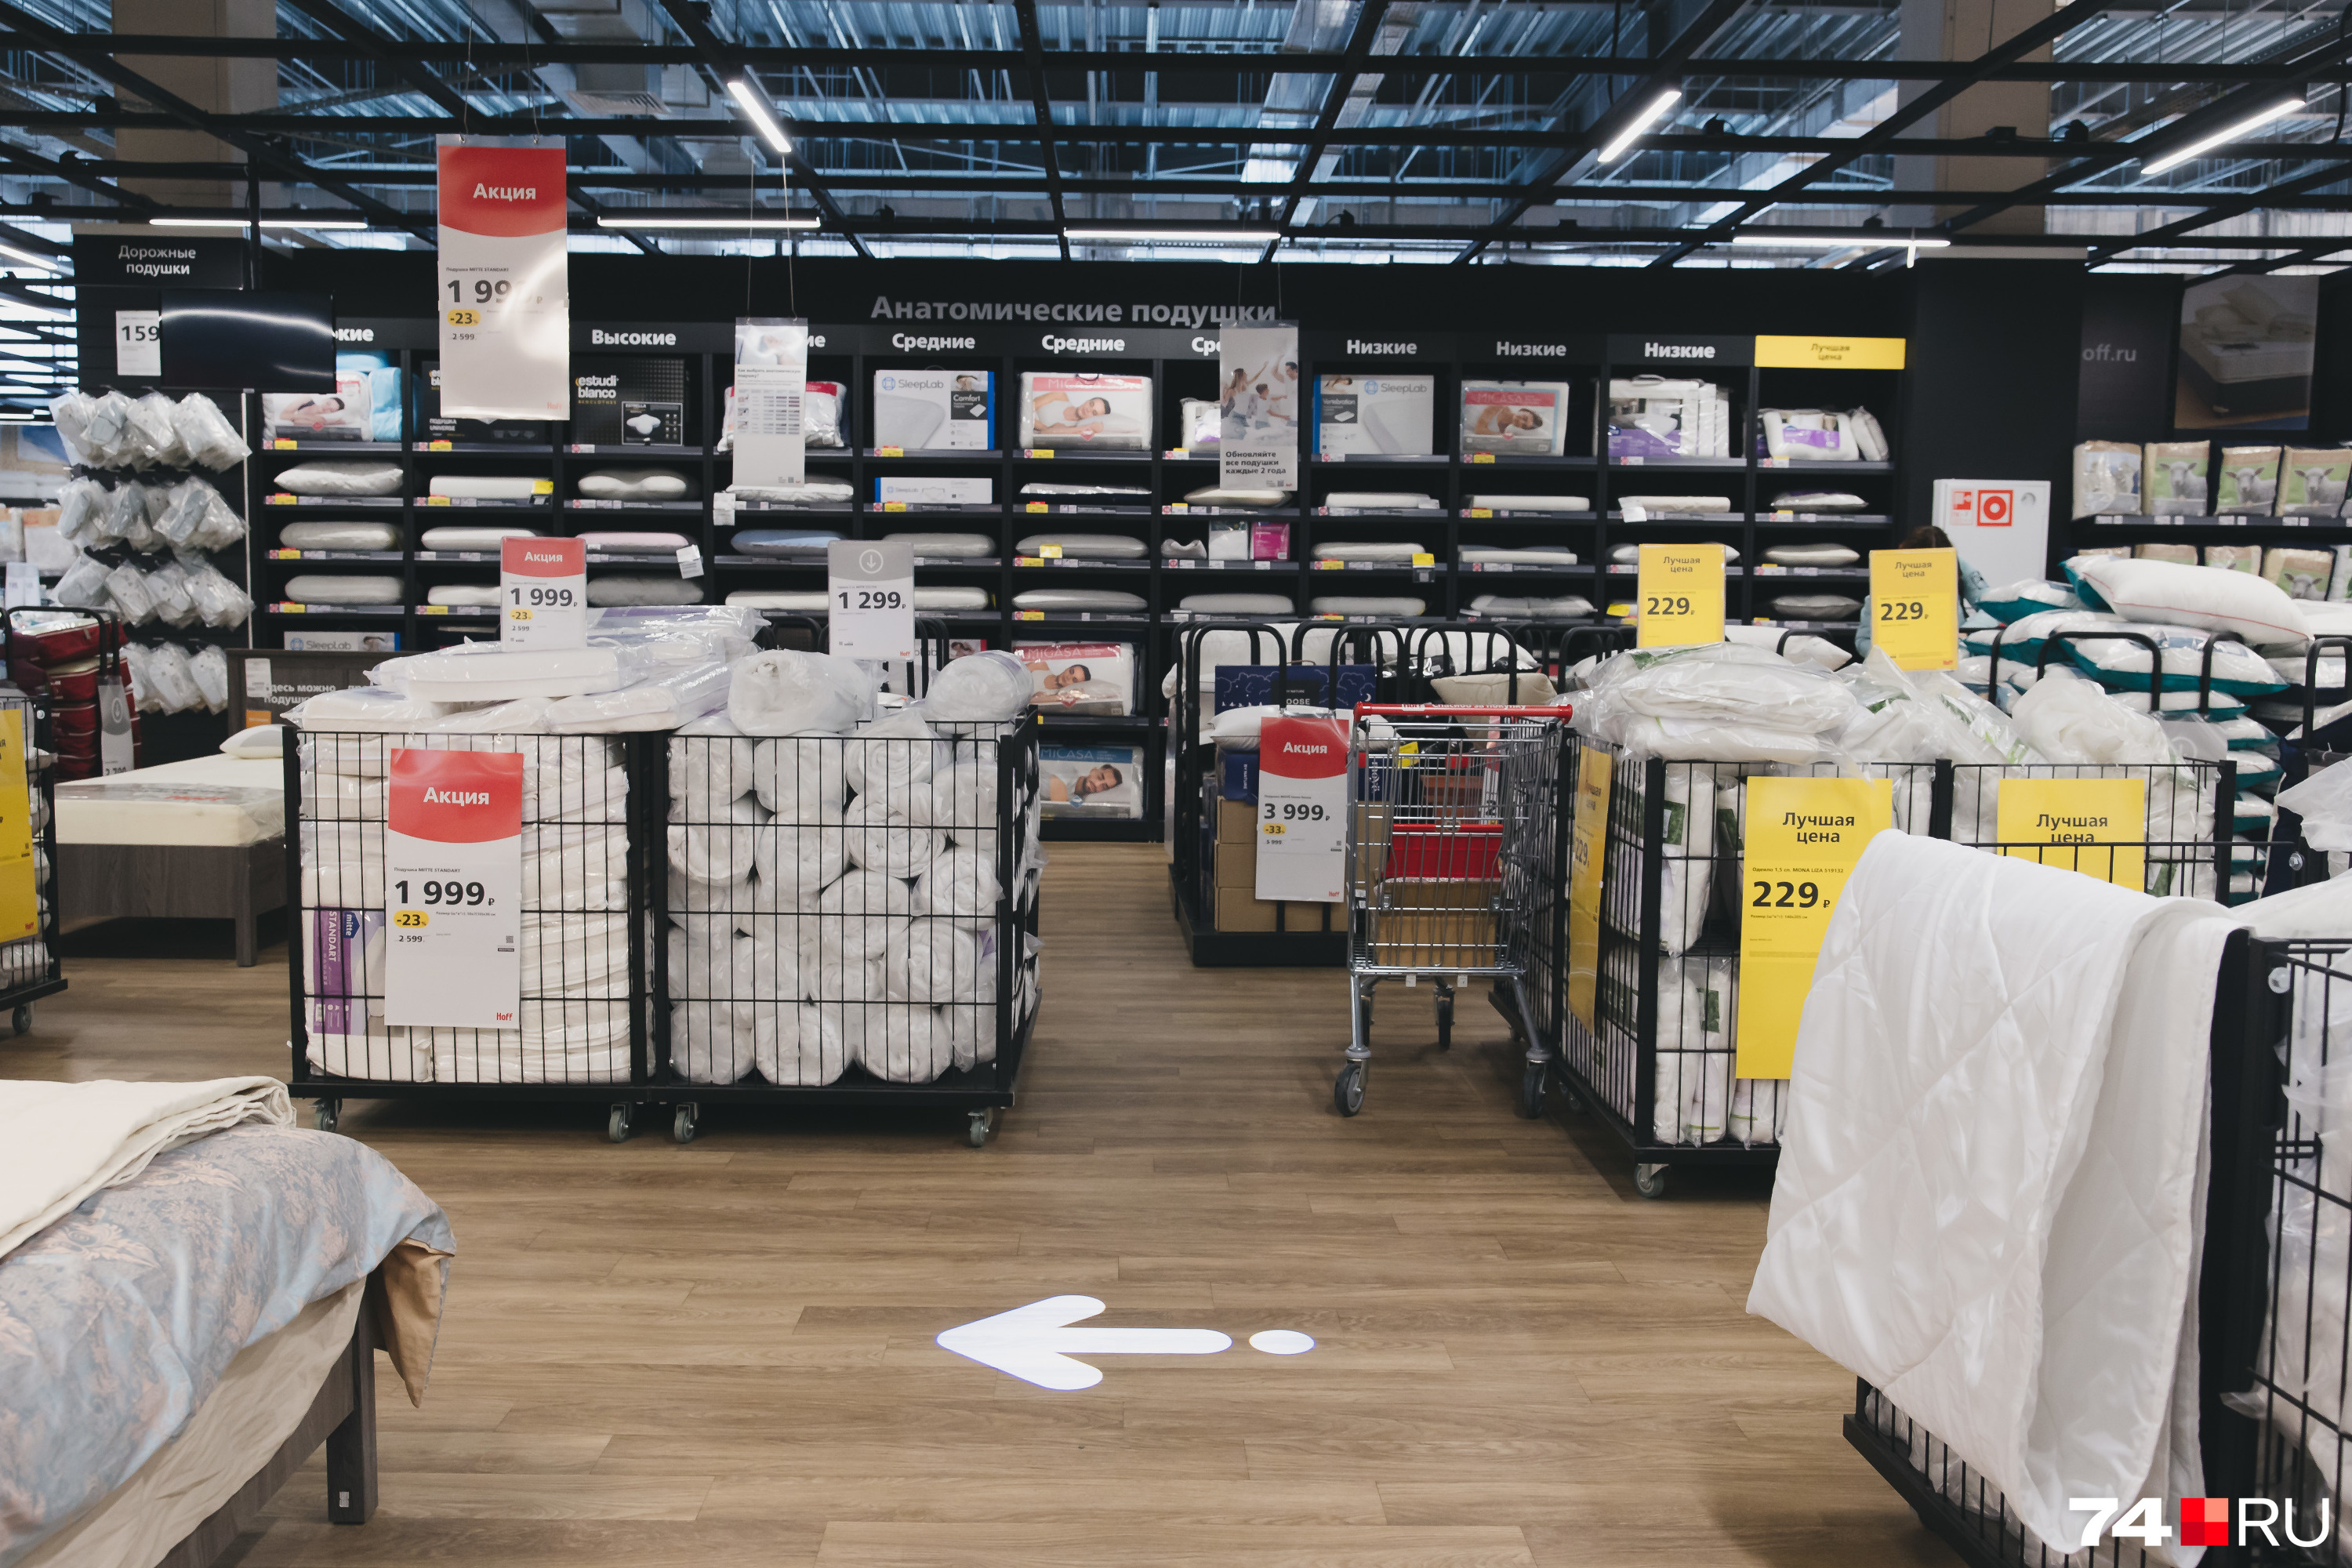 Для удобства покупателей сделаны стрелки на полу, но заблудиться внутри нереально — масштабы явно не те, что в IKEA